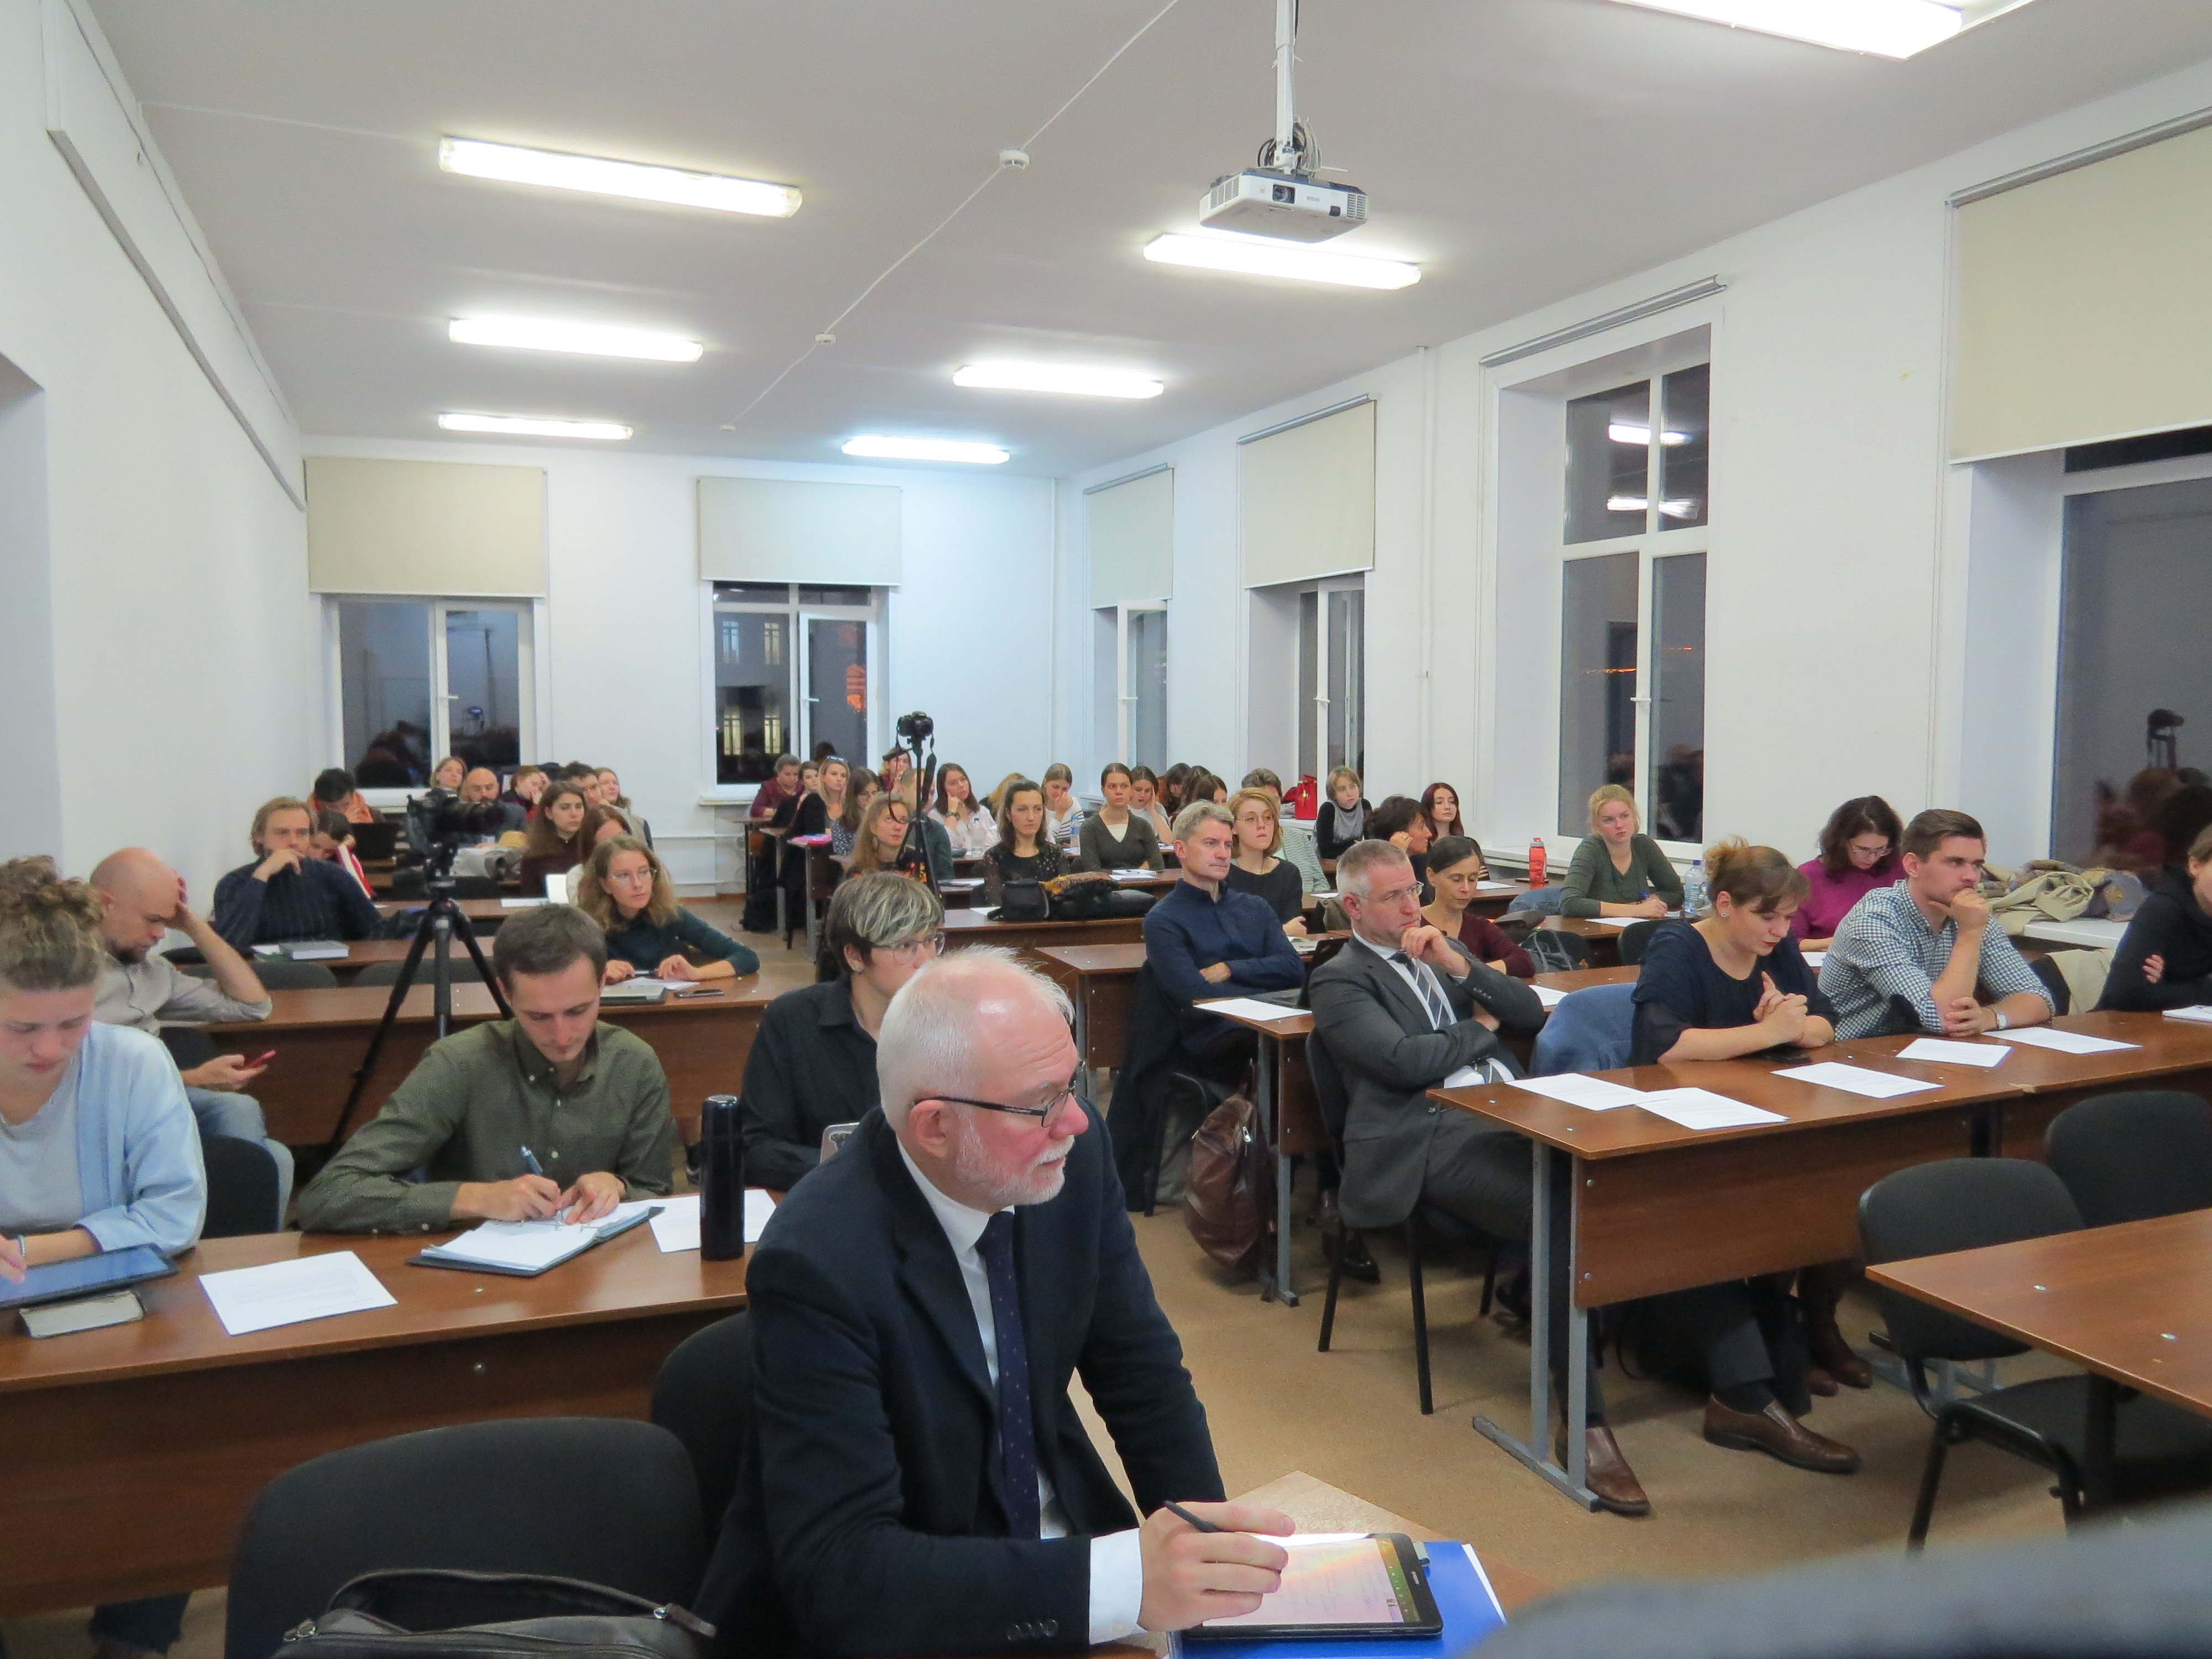 Vortrag von Professor Strohschneider an der HSE Moskau, in erster Reihe Professor Boytsov (Dekan der Geisteswissenschaftlichen Fakultät HSE)